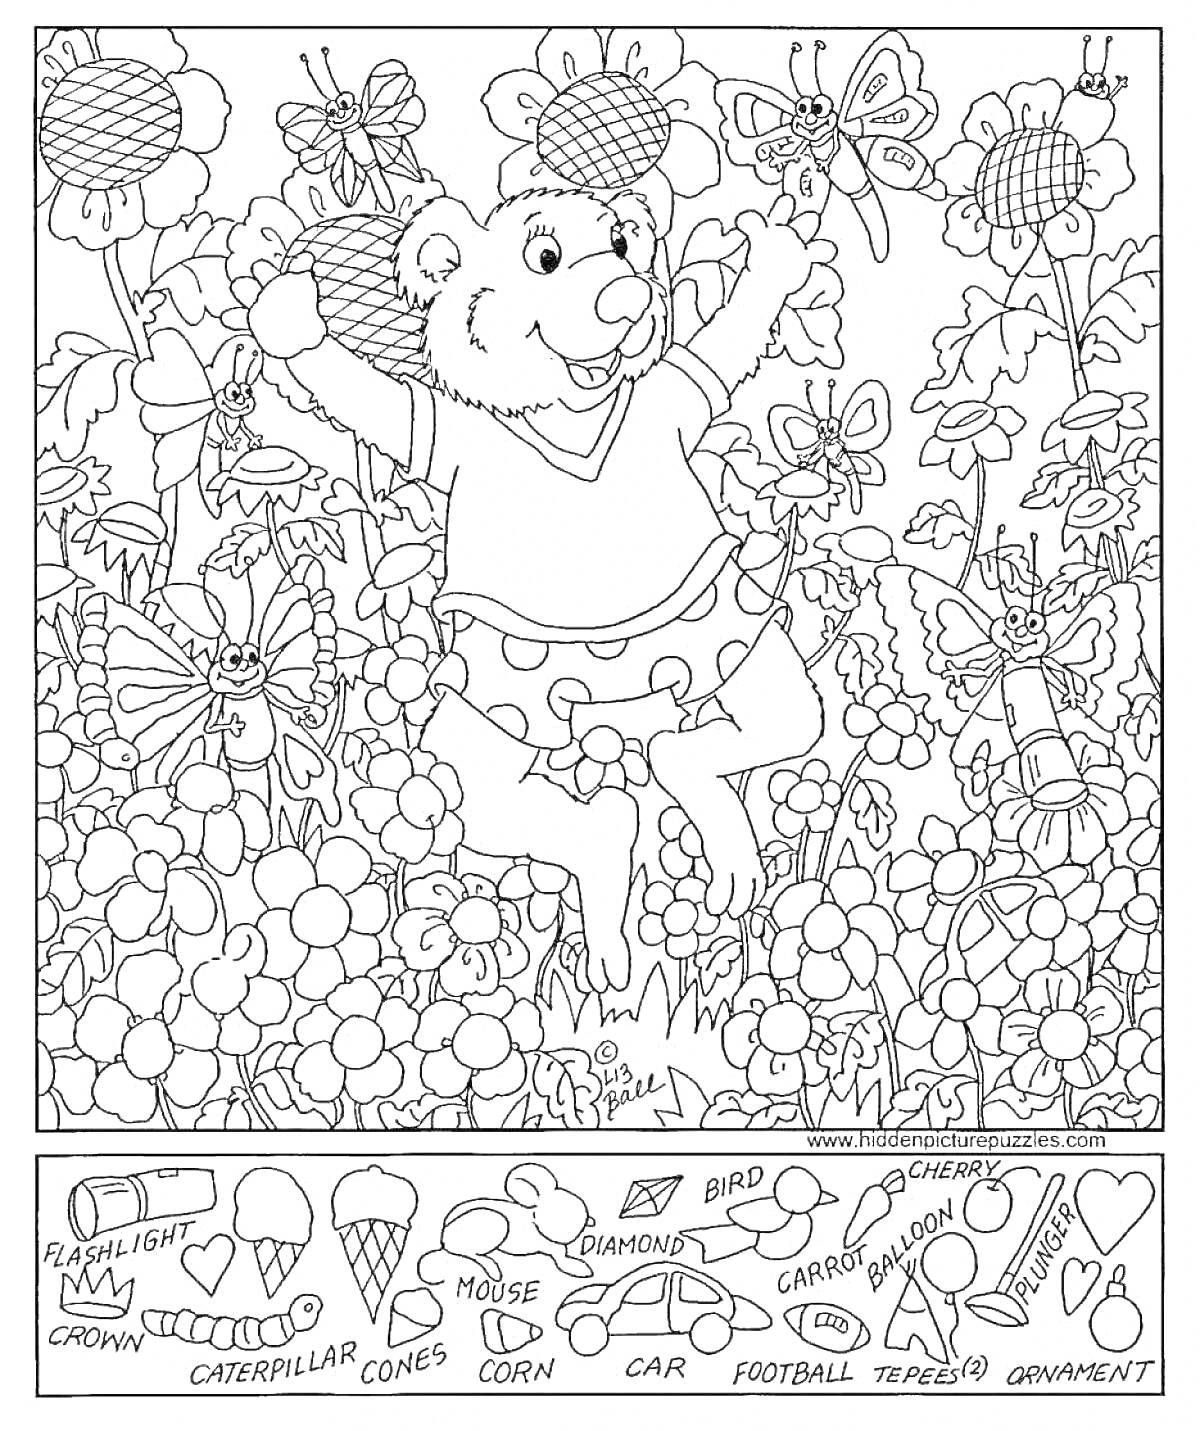 На раскраске изображено: Медведь, Цветы, Предметы, Поиск, Корона, Кора, Мышь, Конусы, Кукуруза, Бриллиант, Птица, Футбольный мяч